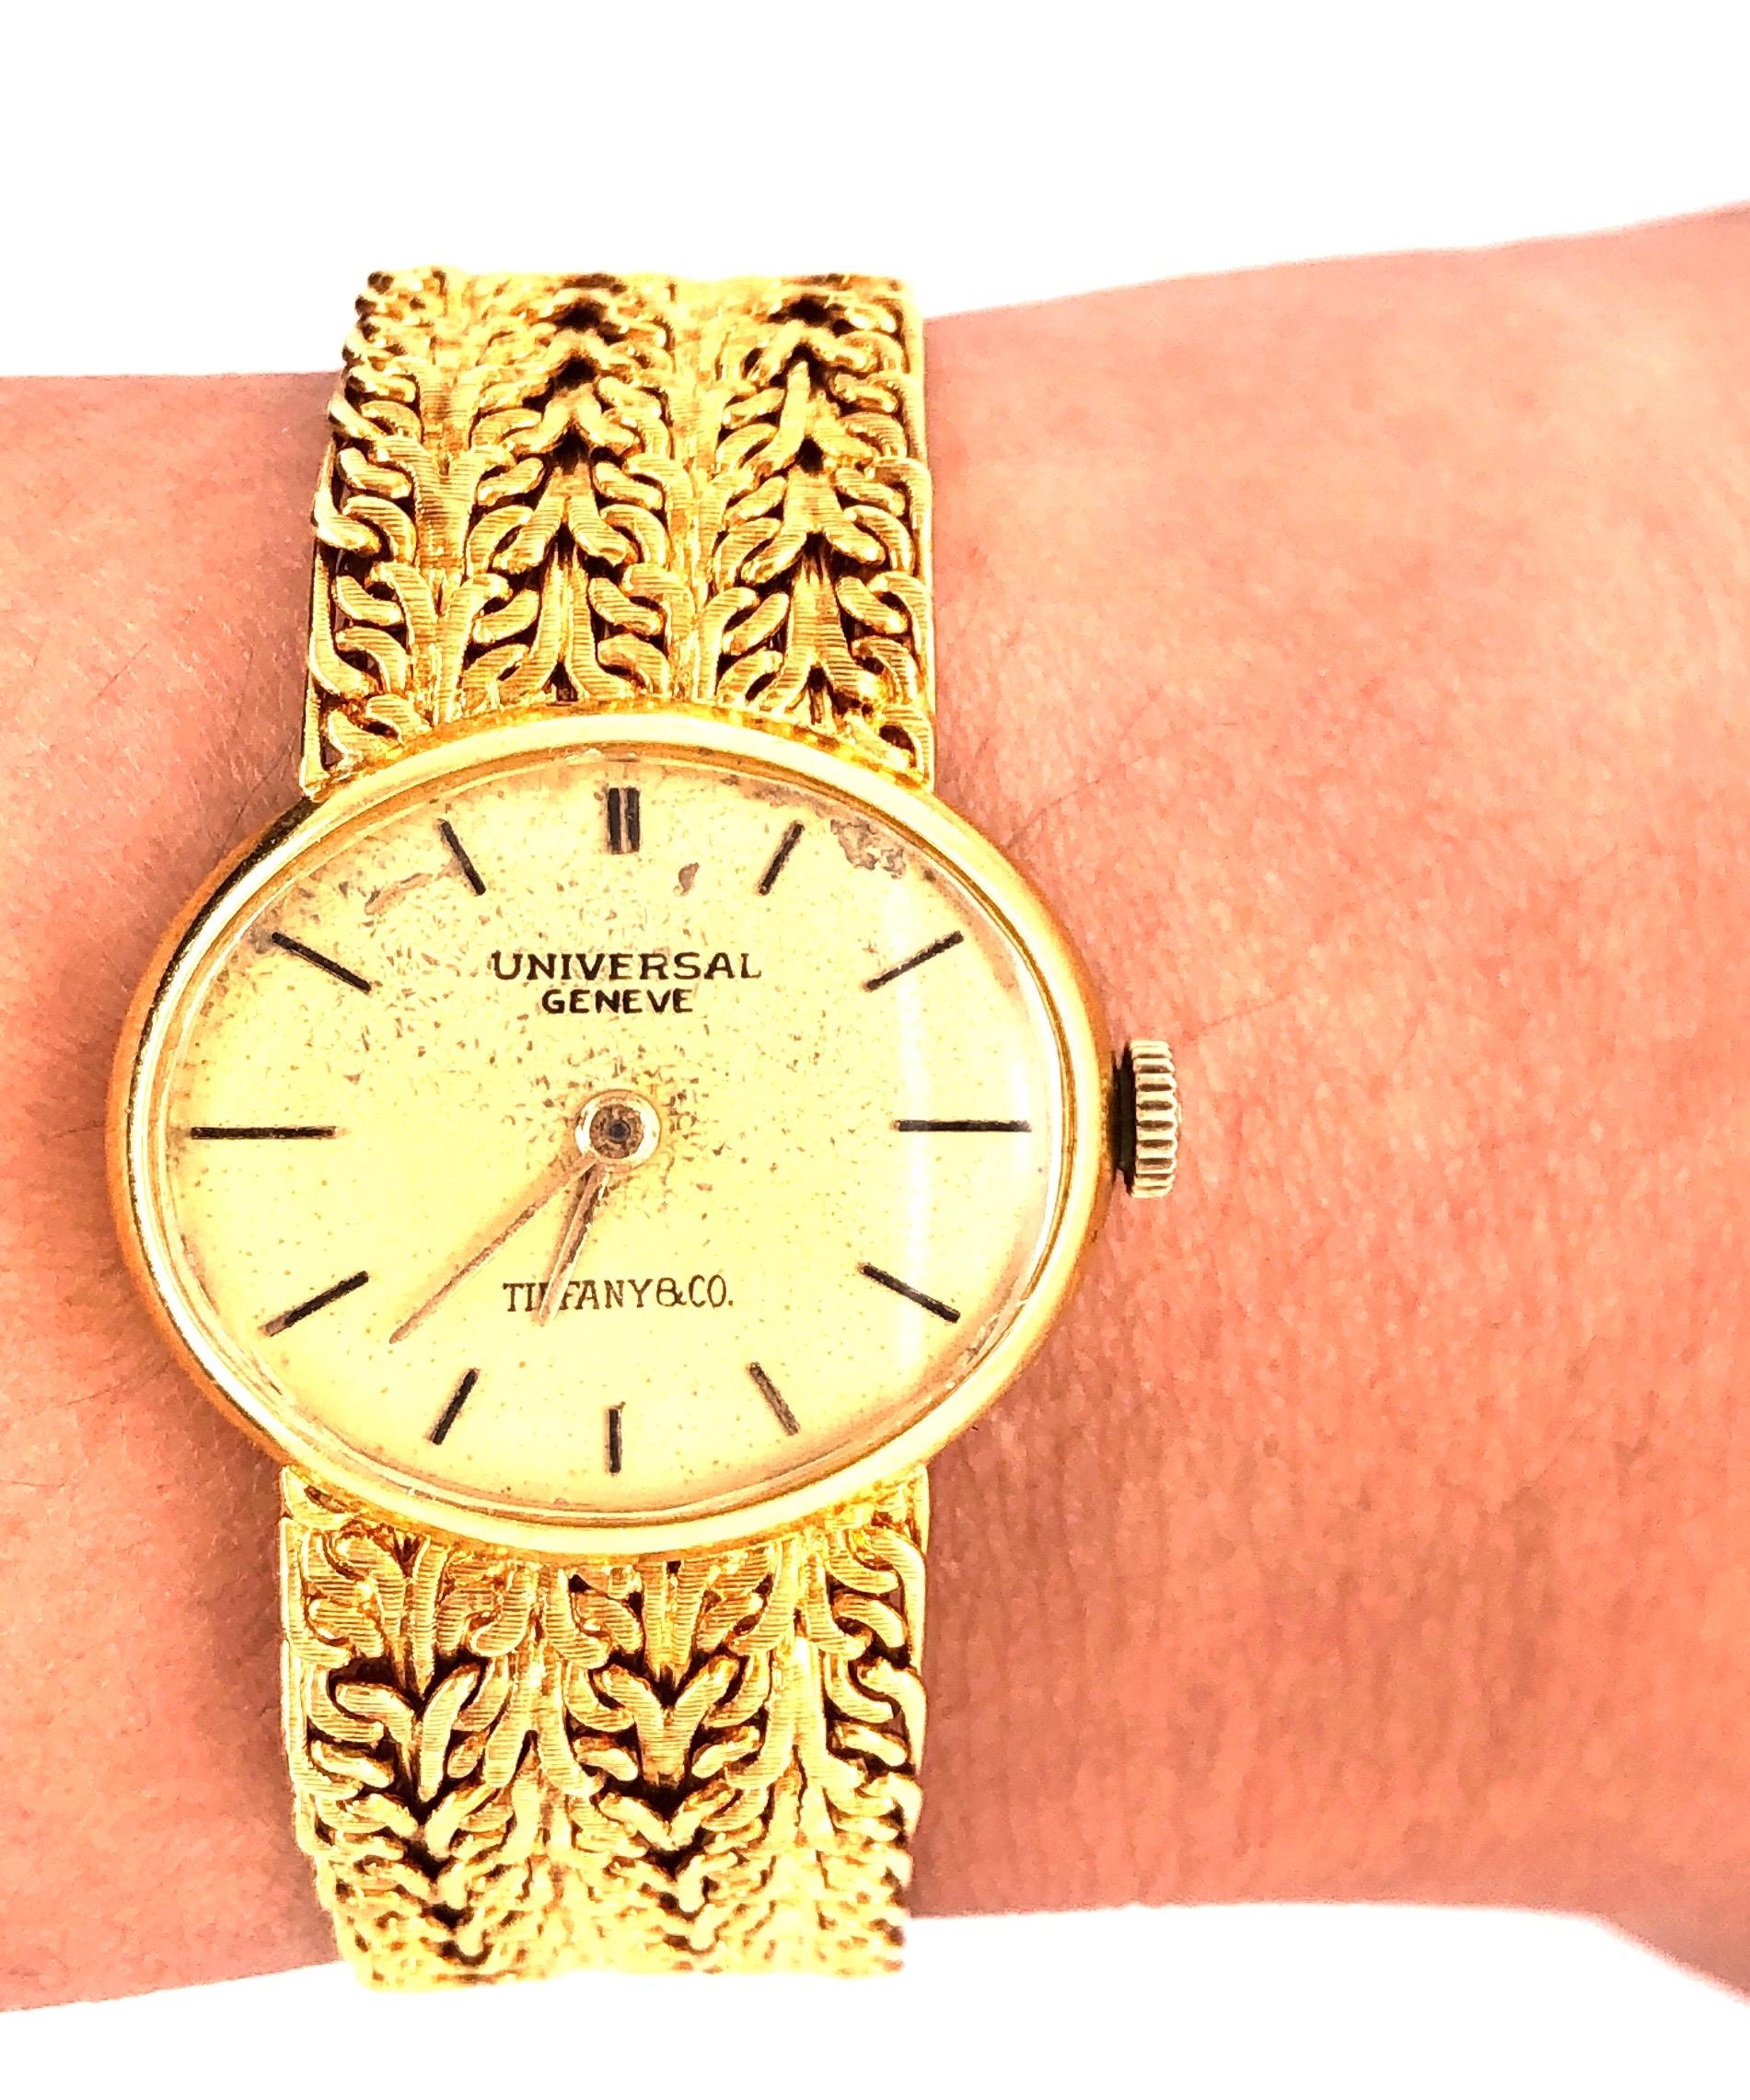 Tiffany & Co zugeschrieben gestempelt Damen Universal Geneve 18 Karat Gold Uhr und Band. Mit einer beeindruckenden 41,7 Gramm von 18Kt Gold. Unbereinigt 17 Juwelen. Diese Uhr ist derzeit in Betrieb. Dies ist ein gebrauchter Artikel, der ein wenig